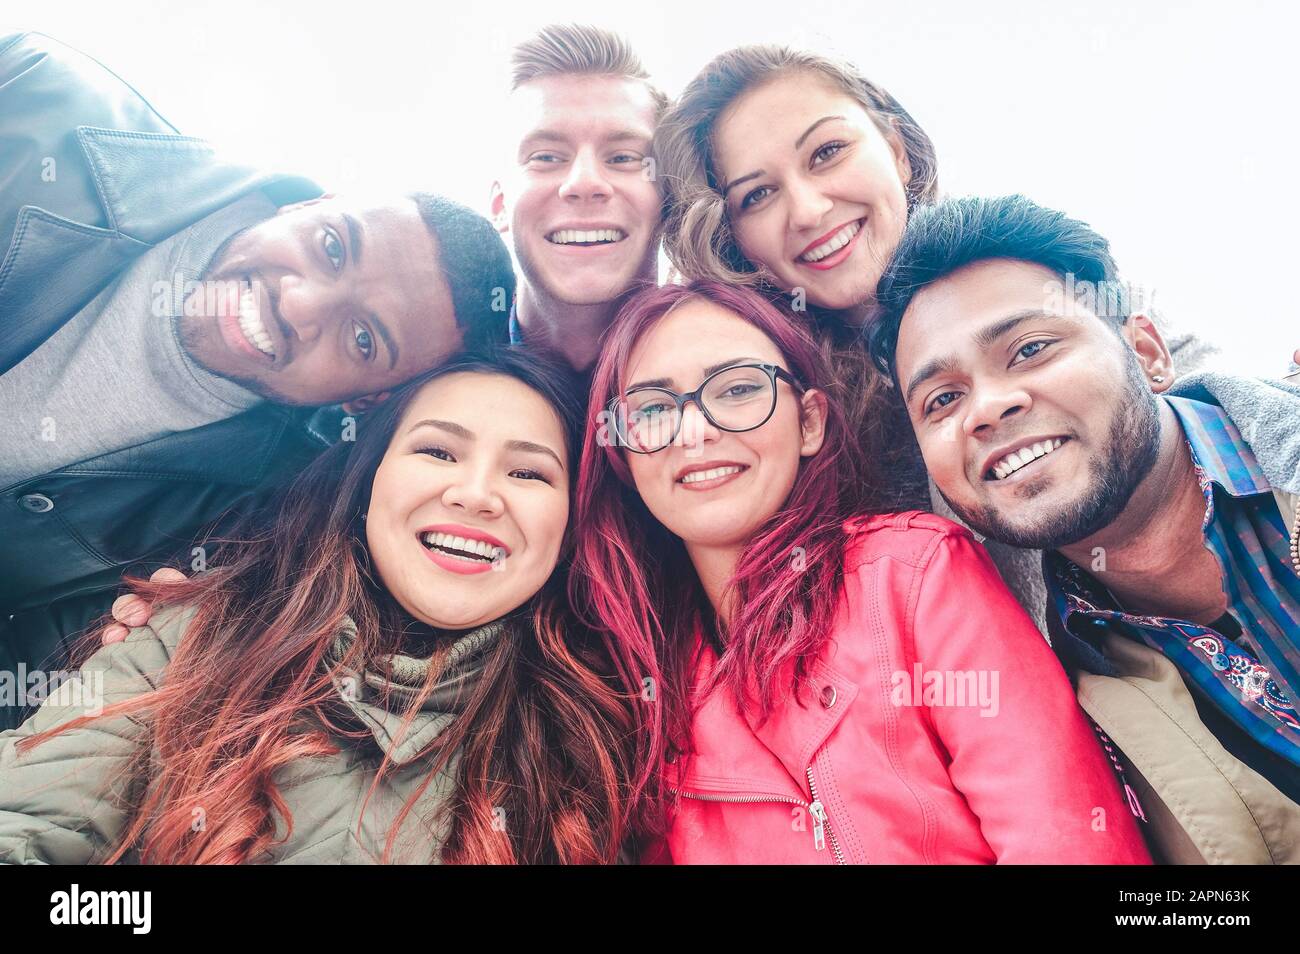 Fröhliche Freunde aus verschiedenen Kulturen und Rassen, die selfie besuchen - Studenten, die sich über Technologietrends an der erasmus-universität lustig machen - Jugend, Technik und Frien Stockfoto